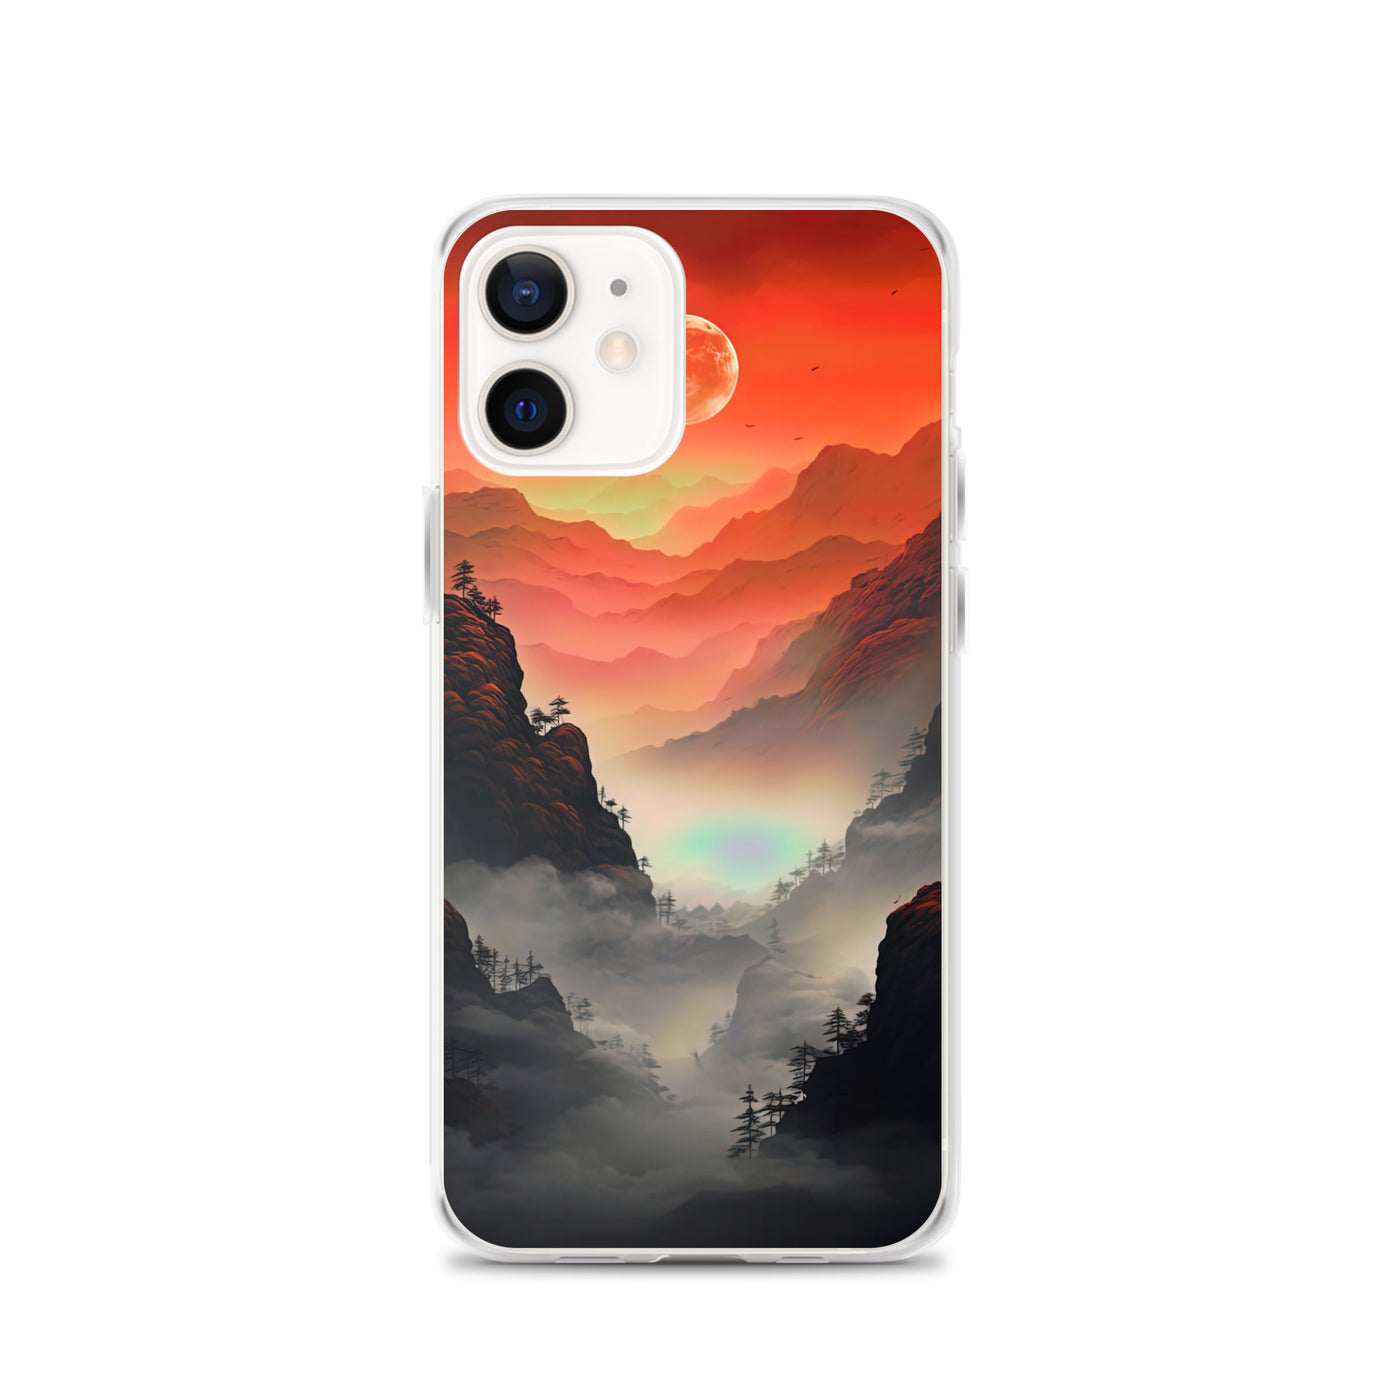 Gebirge, rote Farben und Nebel - Episches Kunstwerk - iPhone Schutzhülle (durchsichtig) berge xxx iPhone 12